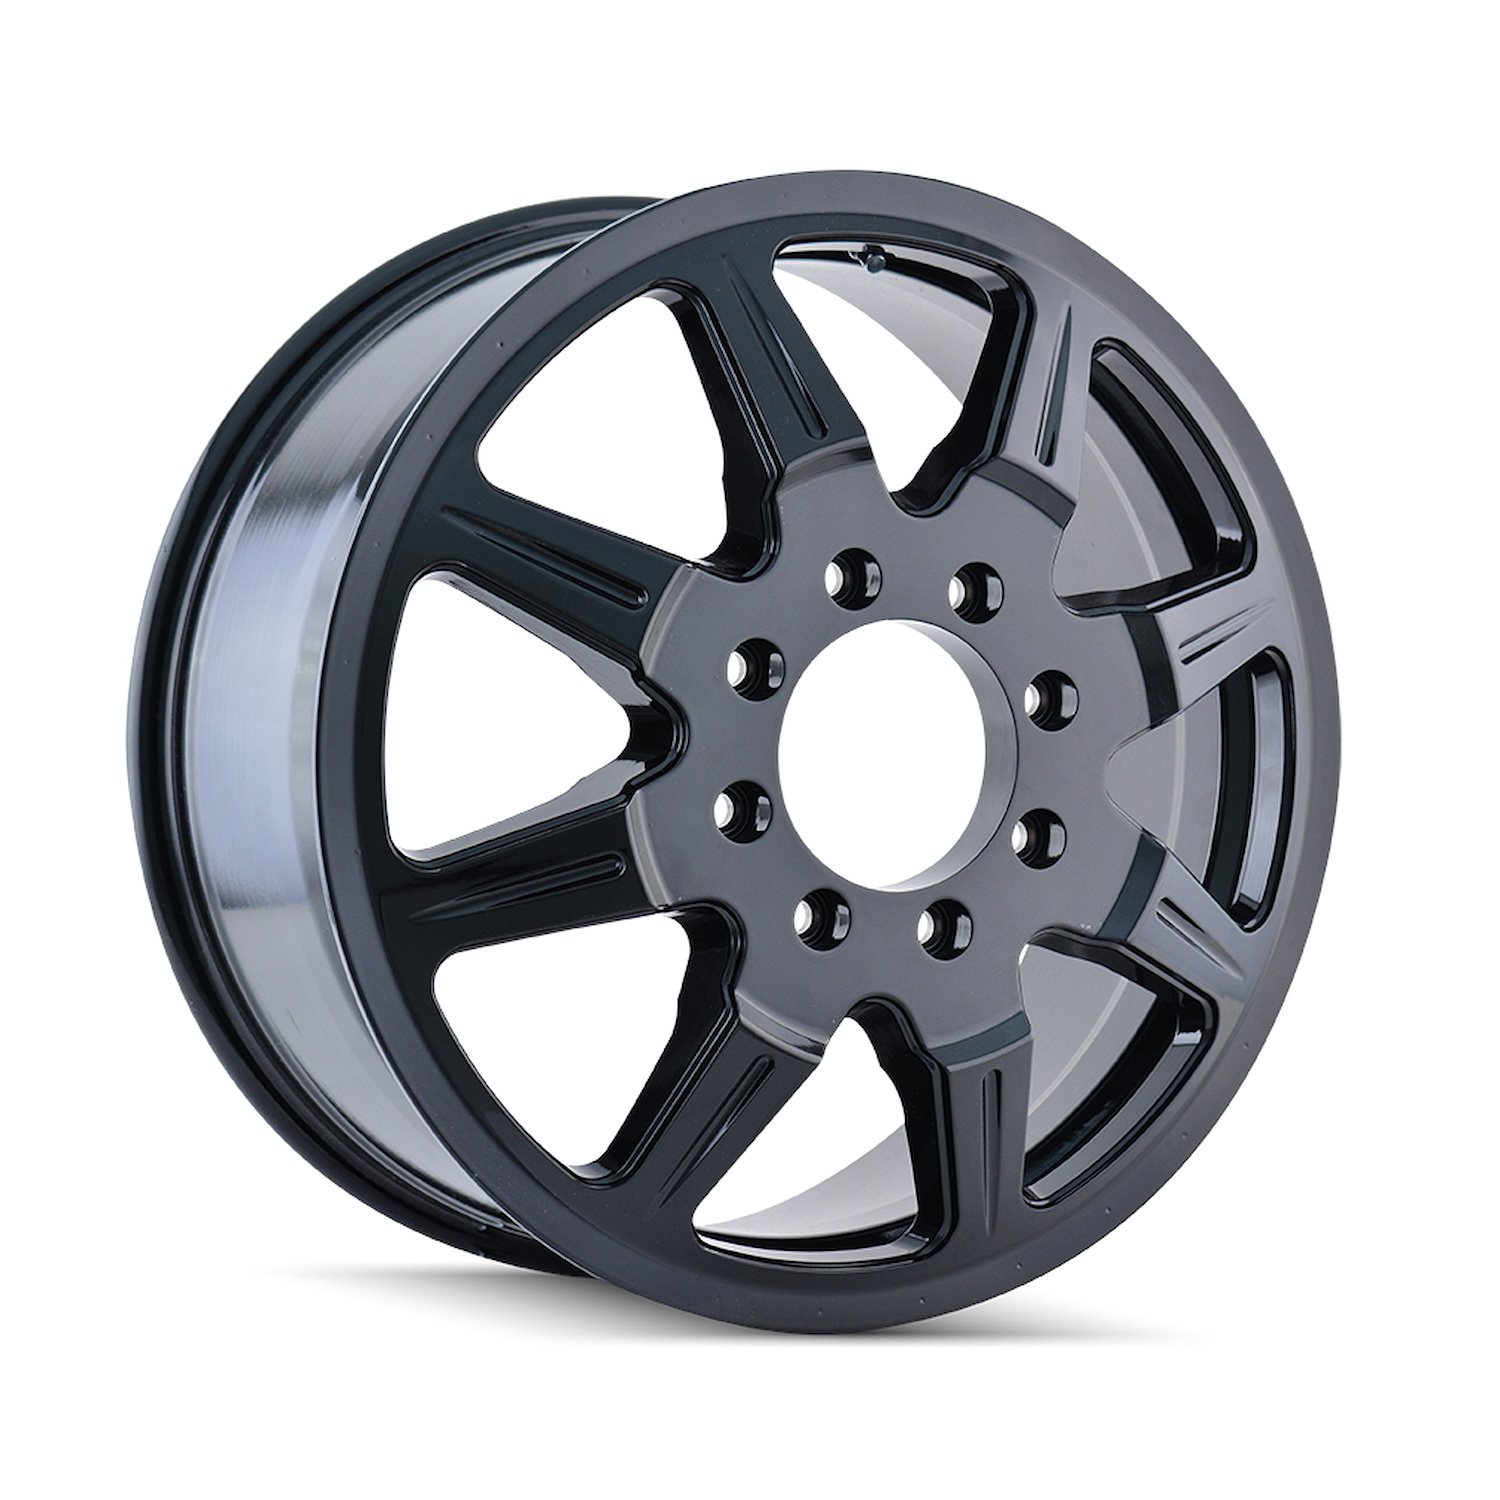 8101-2881BI121 Monstir 8101-Series Wheel [Size: 20" x 8.25"] Gloss Black